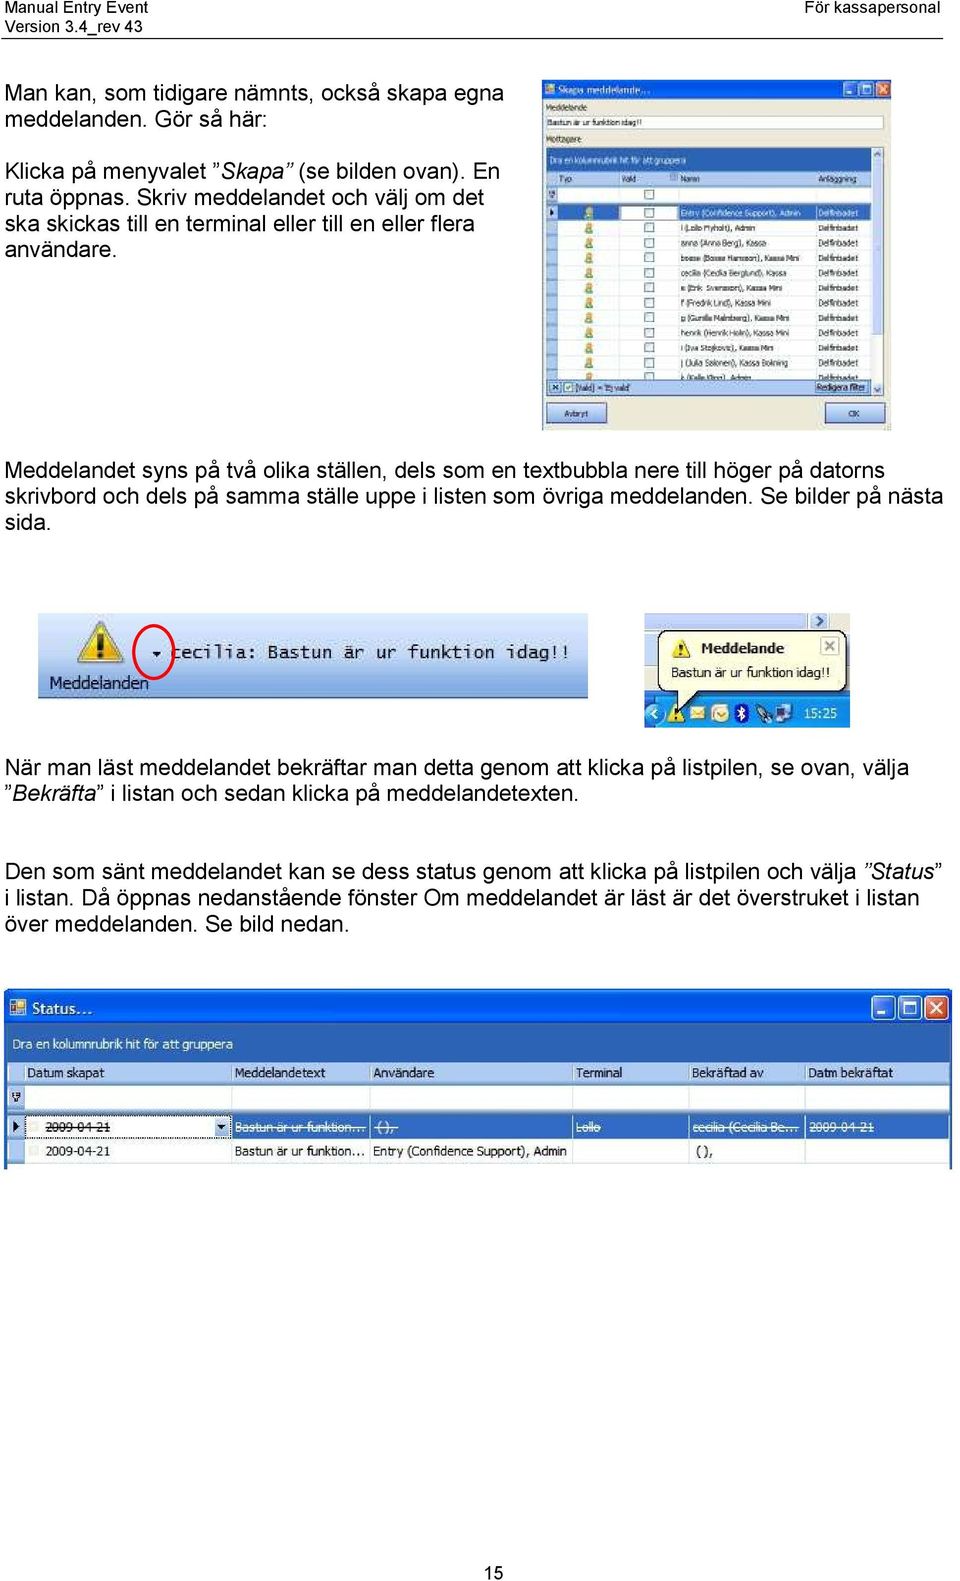 Meddelandet syns på två olika ställen, dels som en textbubbla nere till höger på datorns skrivbord och dels på samma ställe uppe i listen som övriga meddelanden. Se bilder på nästa sida.